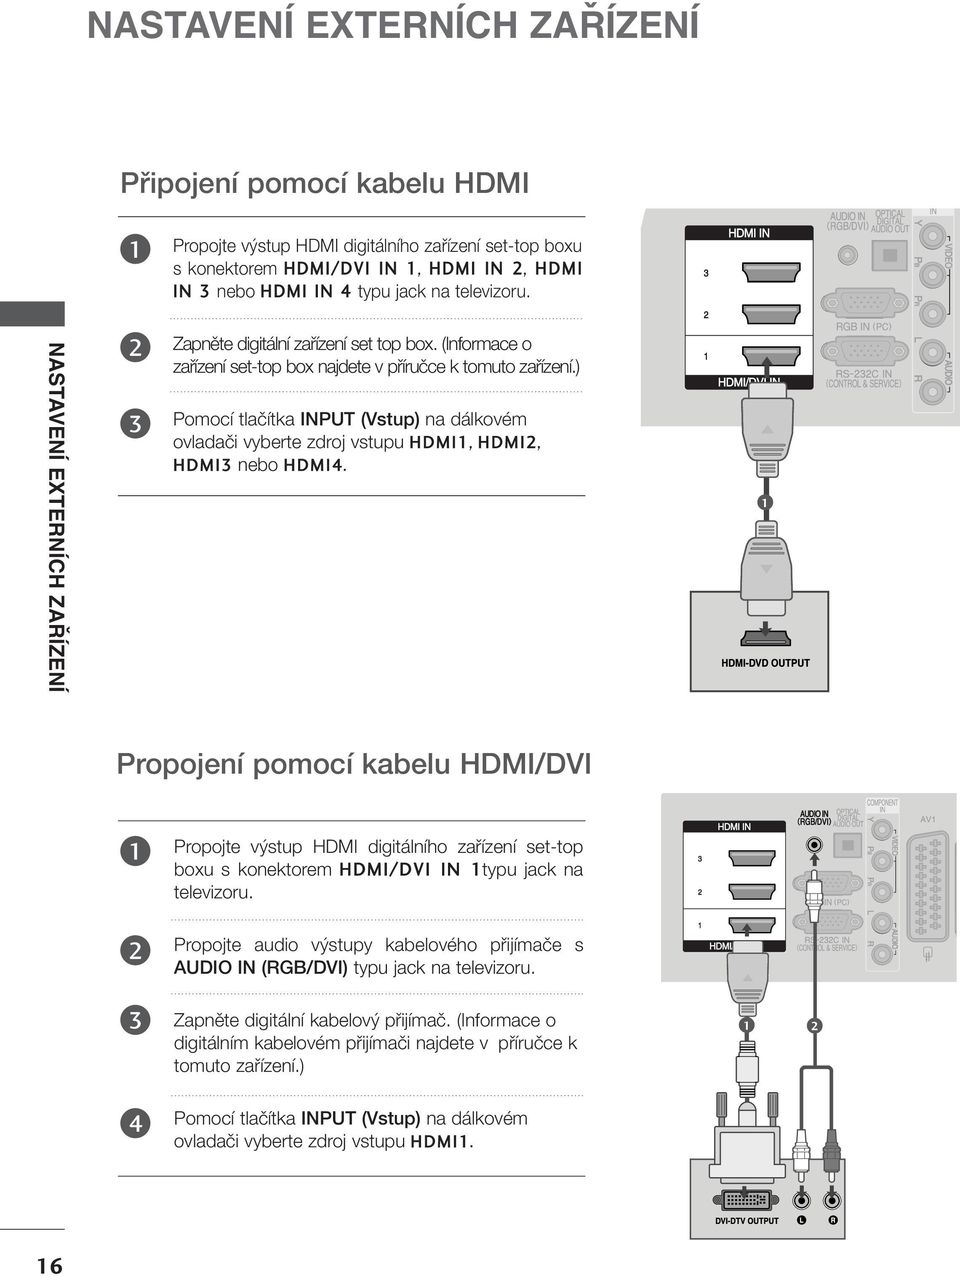 ) Pomocí tlaãítka INPUT (Vstup) na dálkovém ovladaãi vyberte zdroj vstupu HDMI, HDMI, HDMI nebo HDMI4.